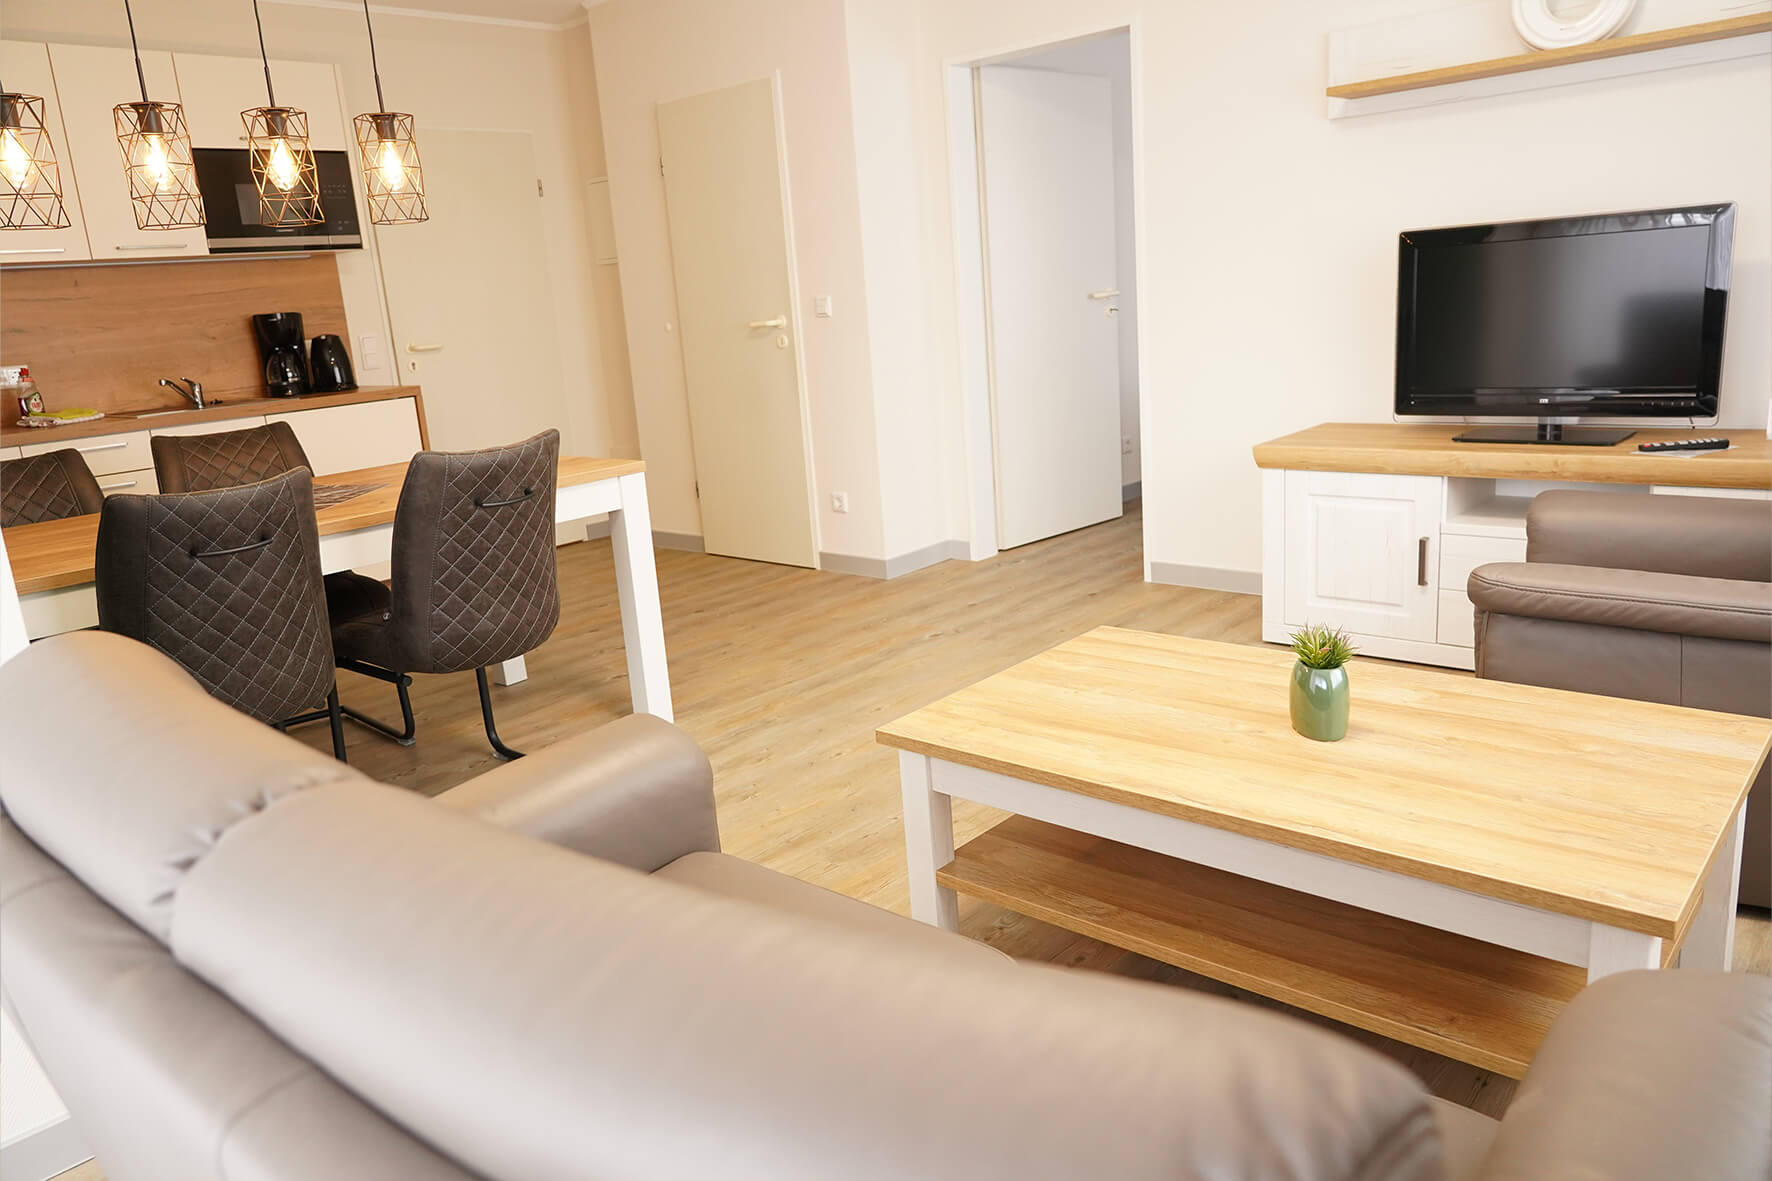 Aufnahme eines Wohnzimmers mit offenem Küchenbereich, Esstisch und Stühlen, braunem fernsehtisch und Flachbildschirmfernseher